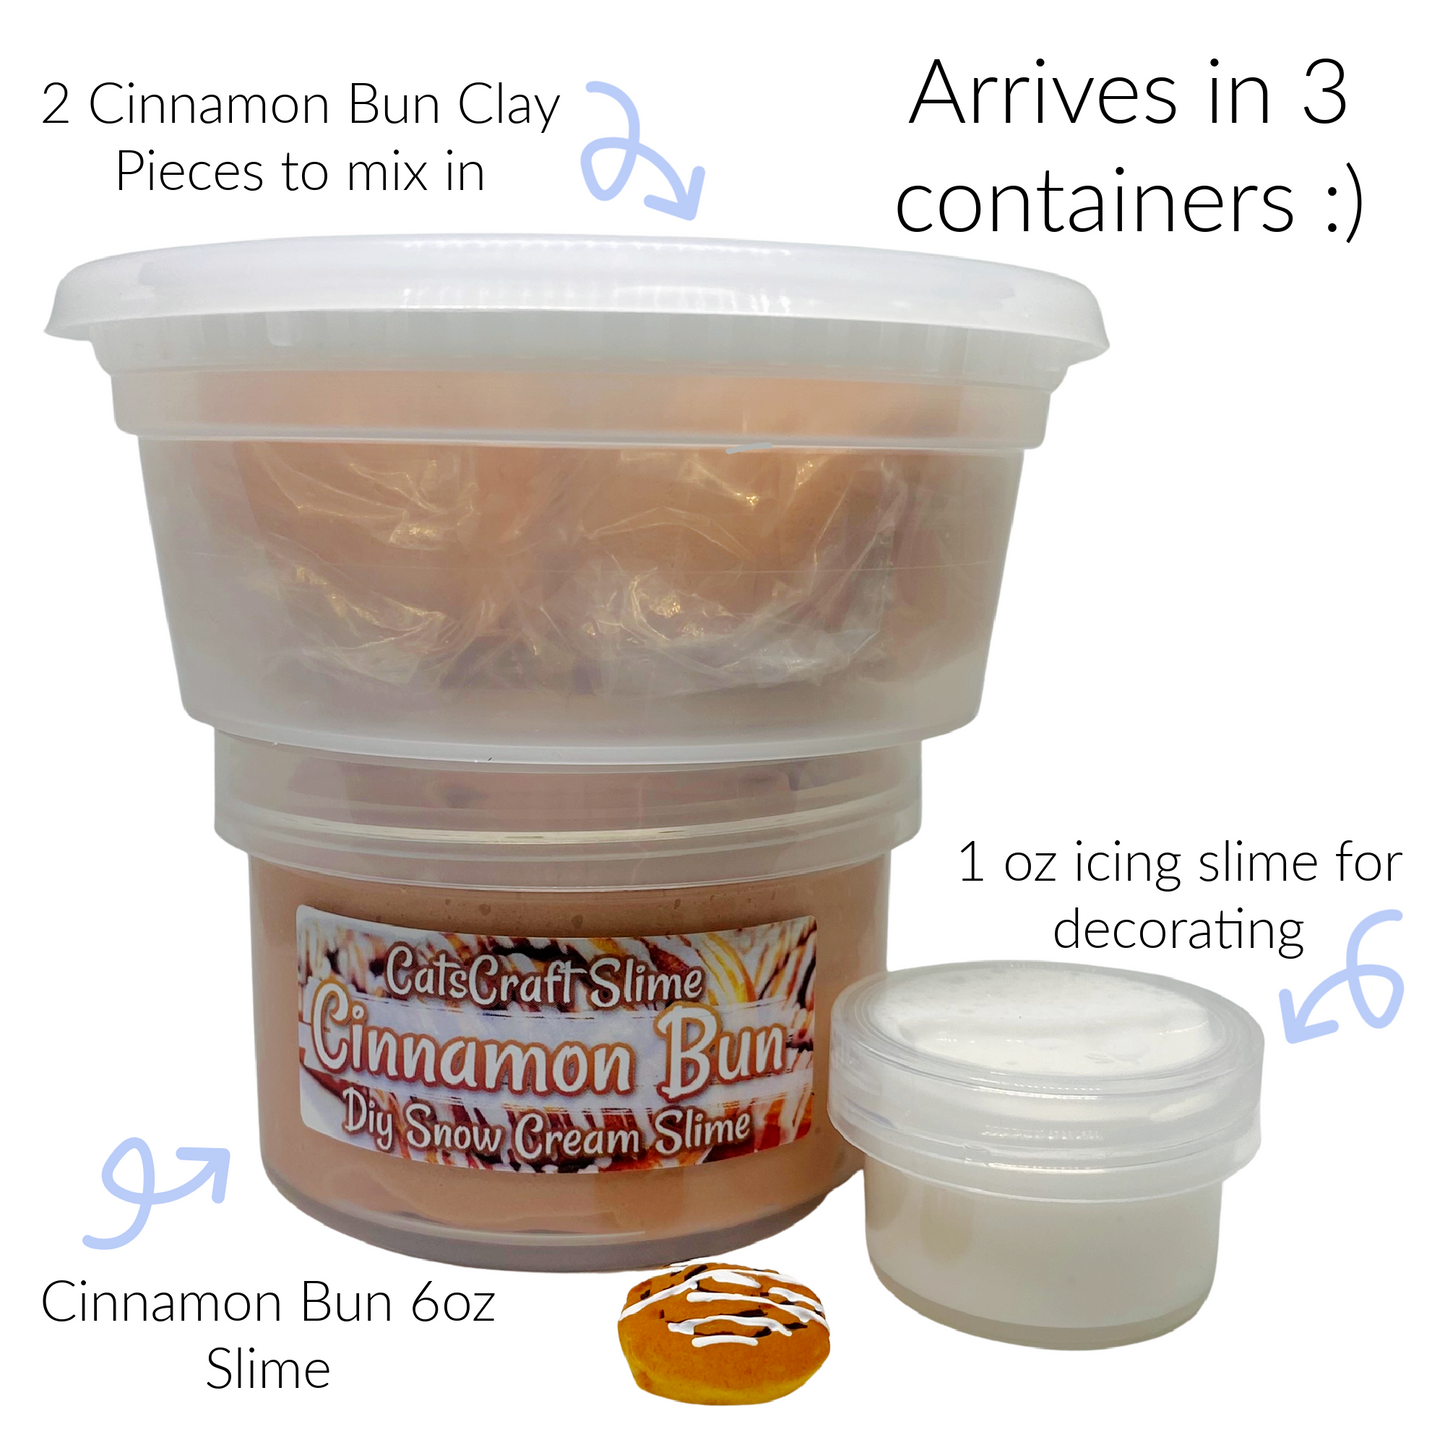 DIY Snow Cream Slime "Cinnamon Bun" Scented Clay Cinnabun Slime Kit ASMR